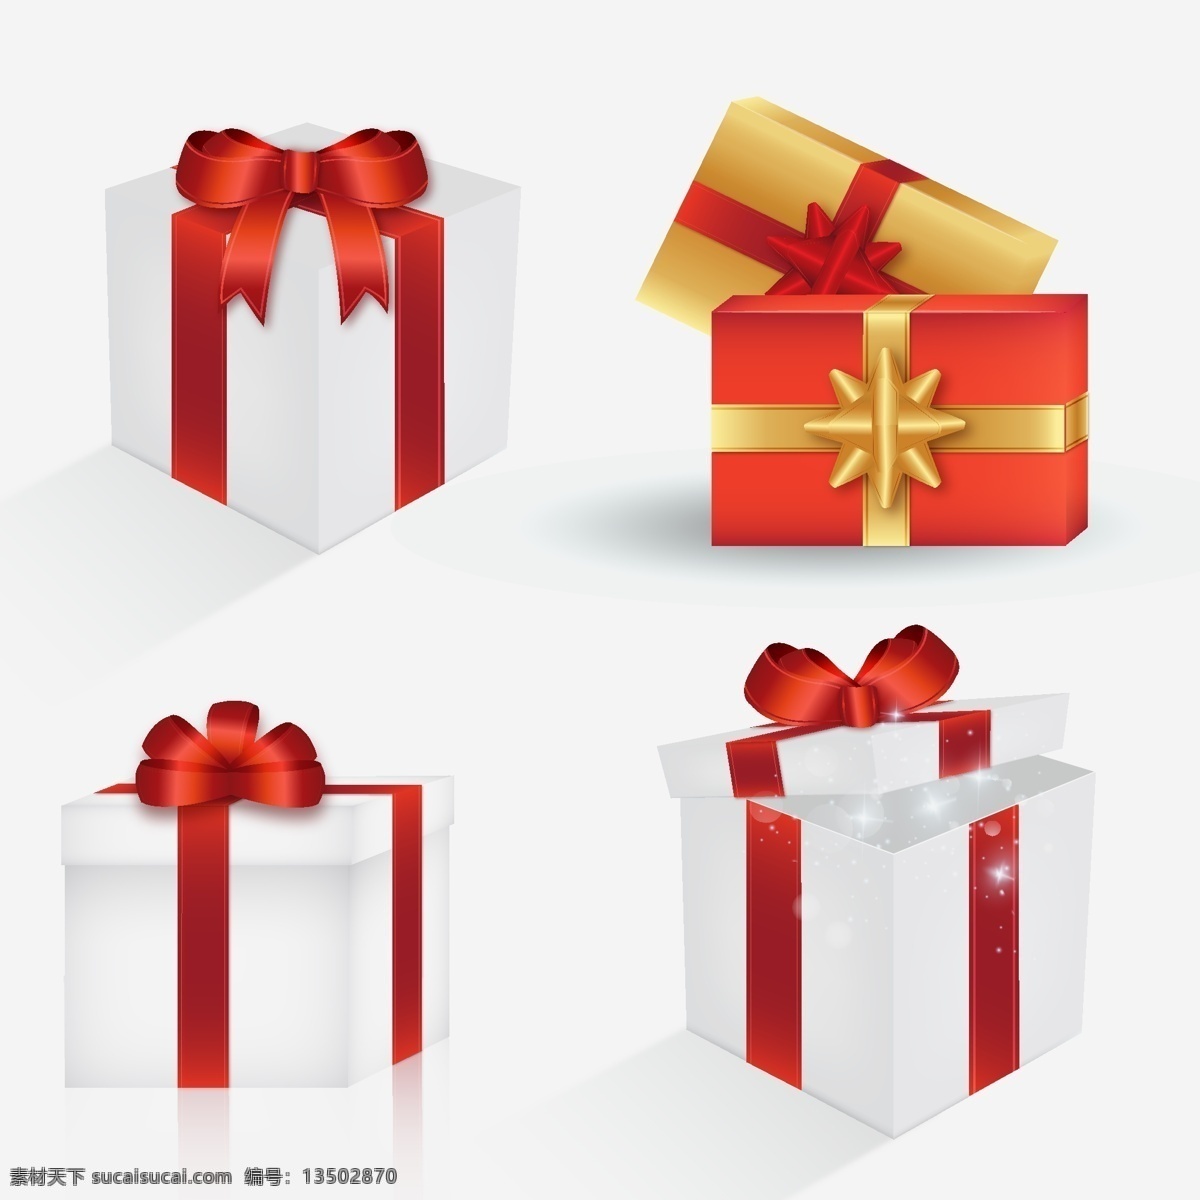 礼物盒子 礼品盒子设计 礼品盒子 礼品 盒子 白色礼品盒 礼品盒 大盒子 圣诞节 圣诞节礼物 礼物 红丝带 红色蝴蝶结 蝴蝶结